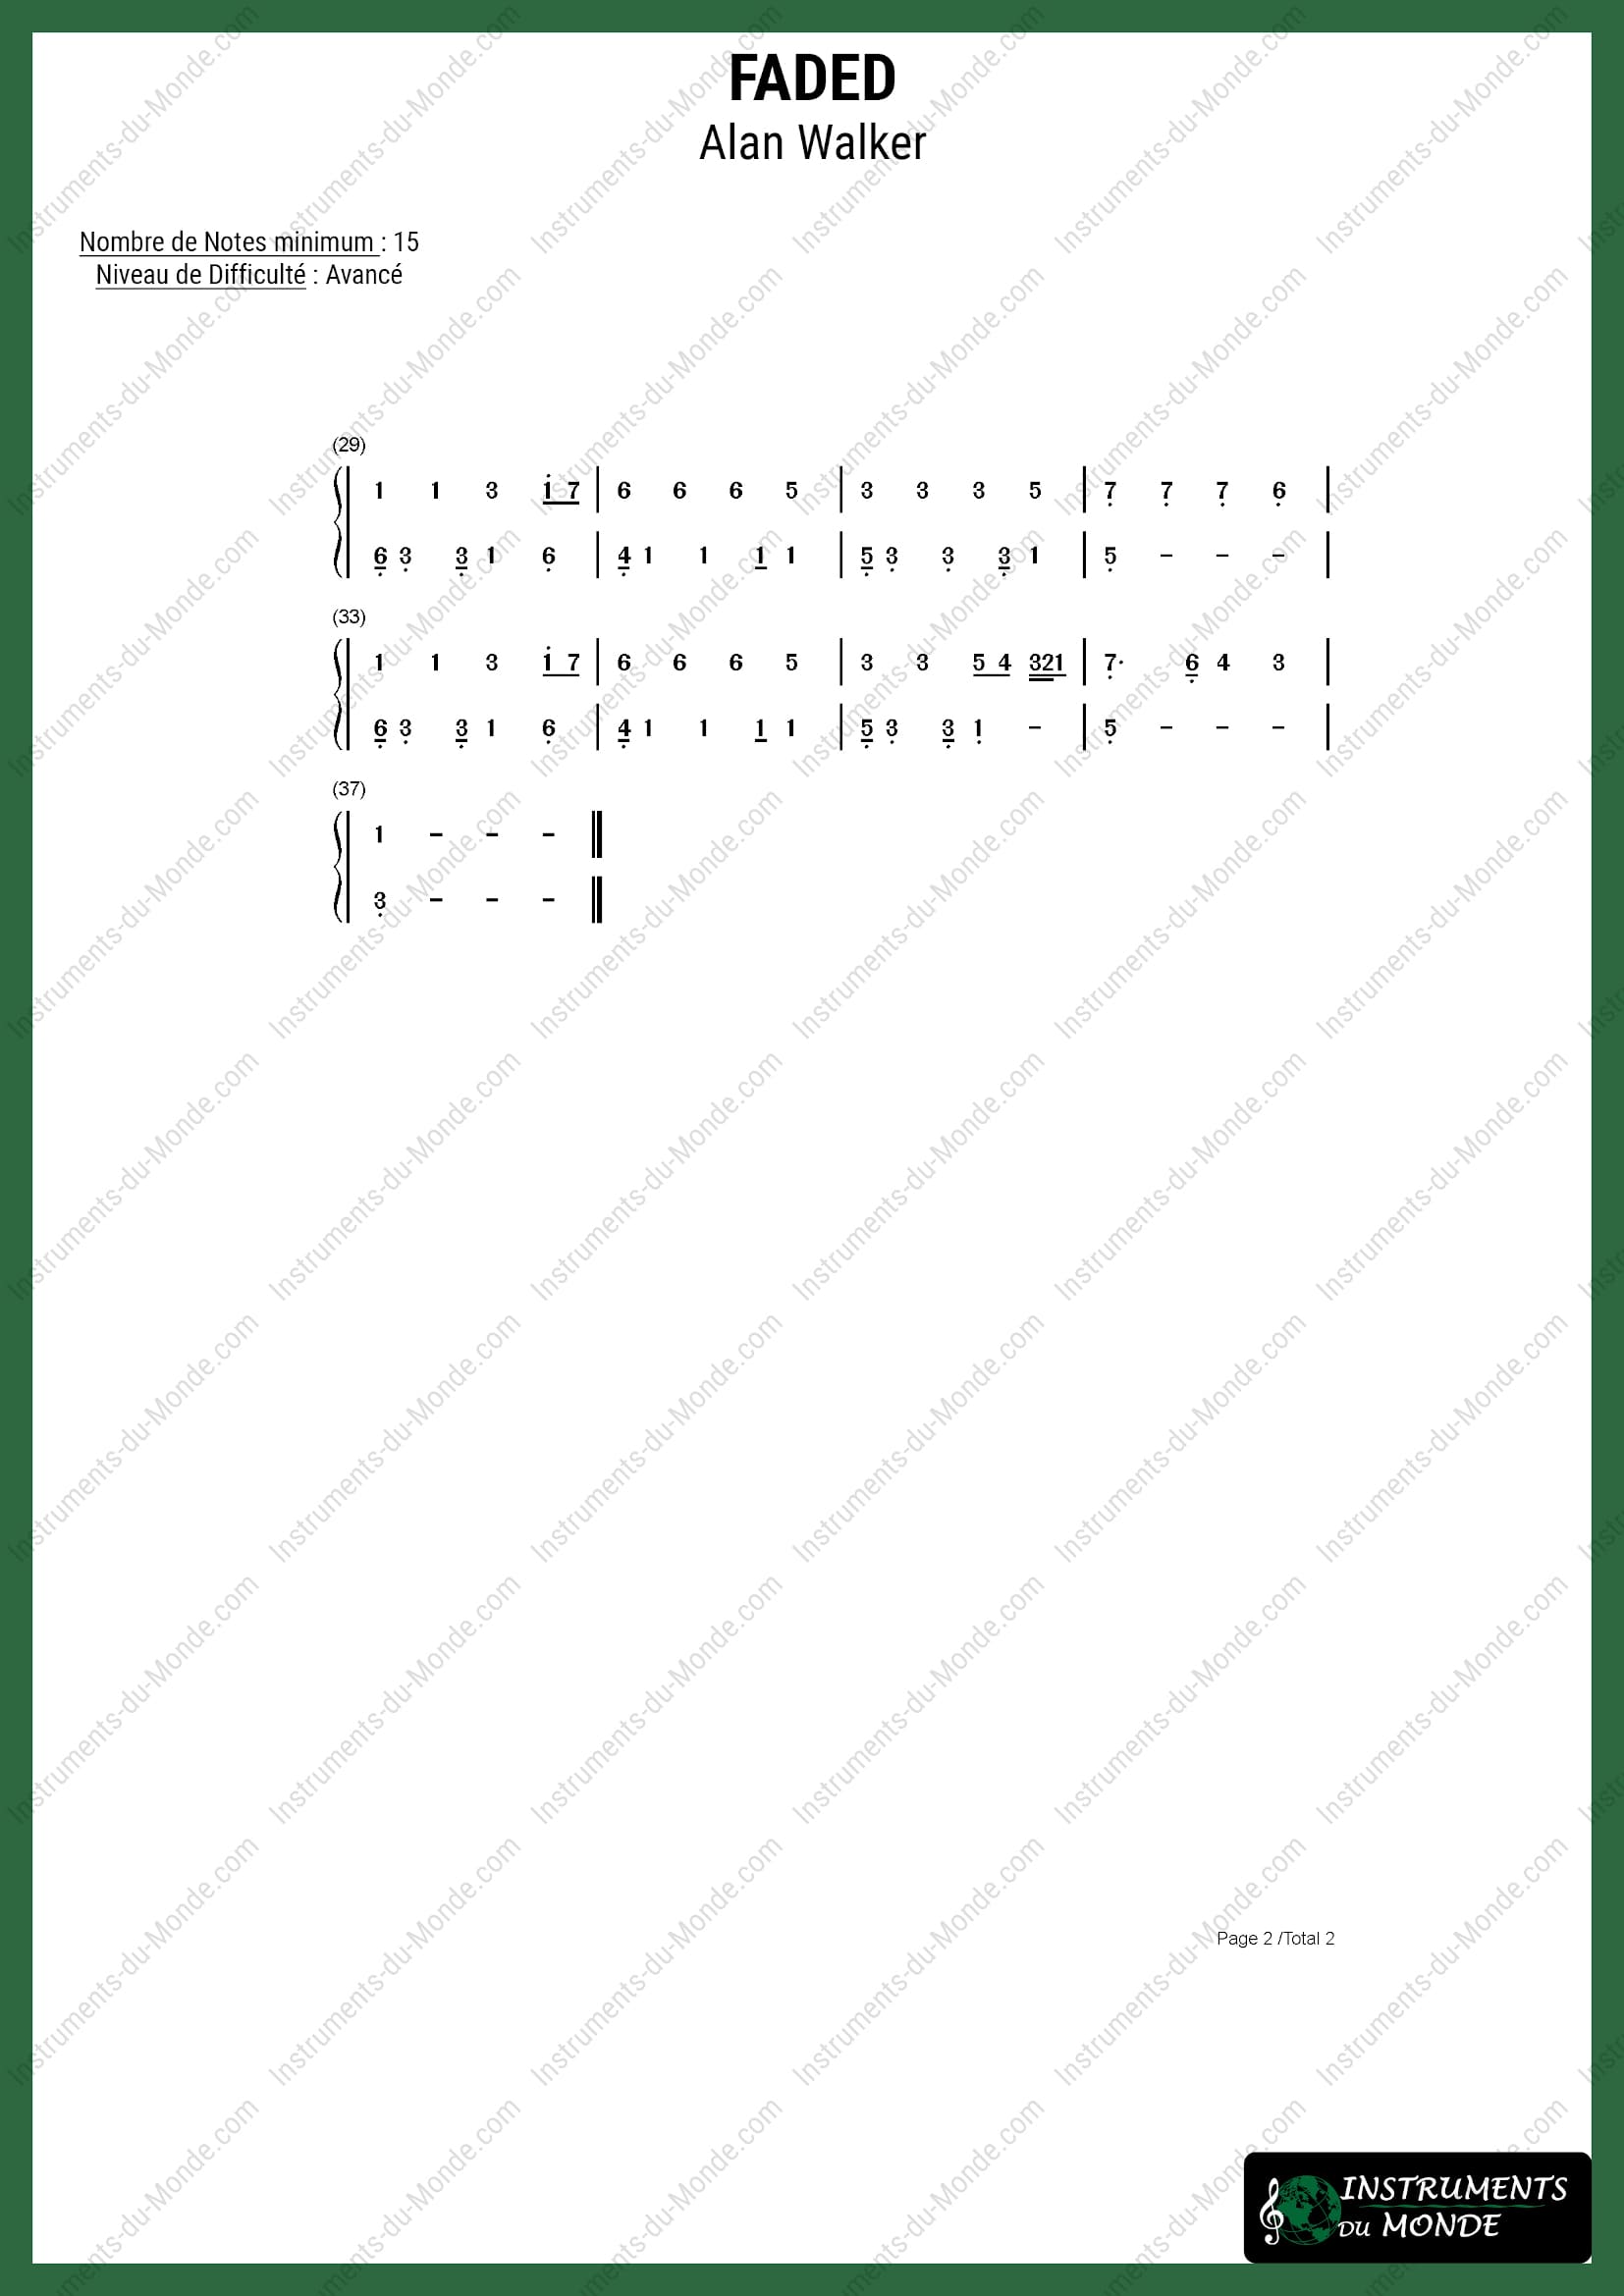 Partition avancée pour Tongue Drum de la chanson Faded d'Alan Walker, page 2